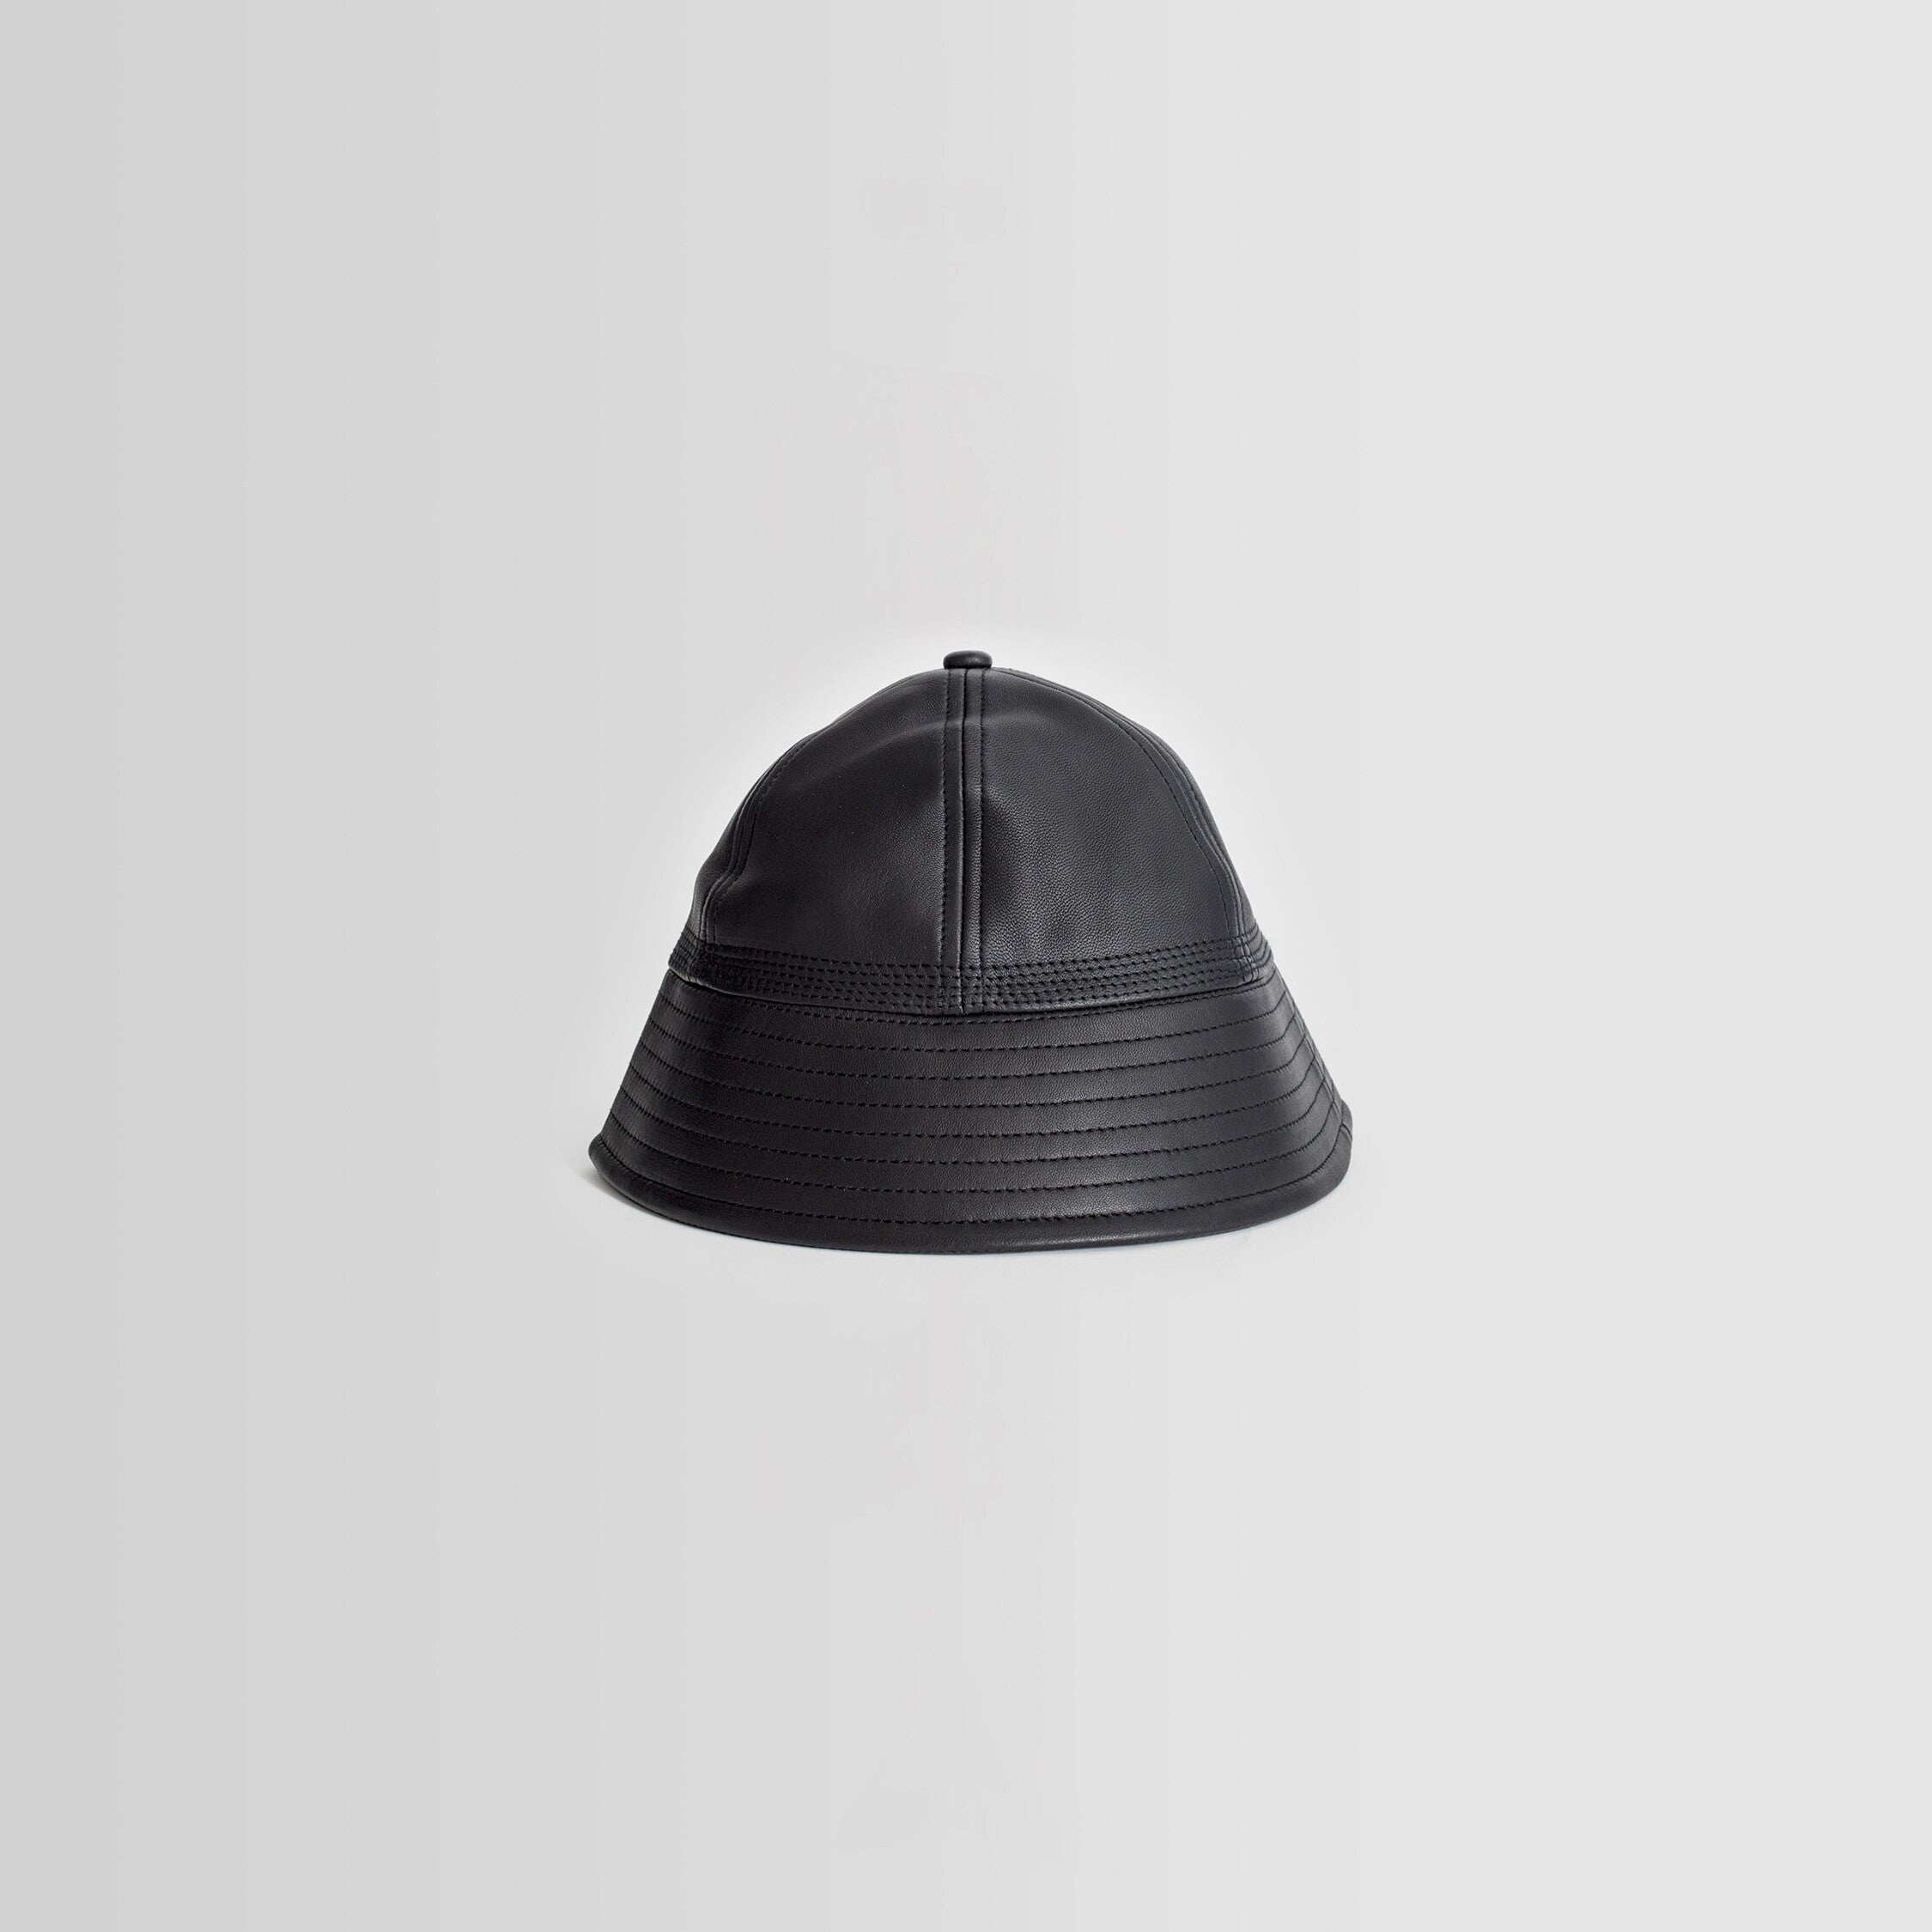 HENDER SCHEME MAN BLACK HATS - 6